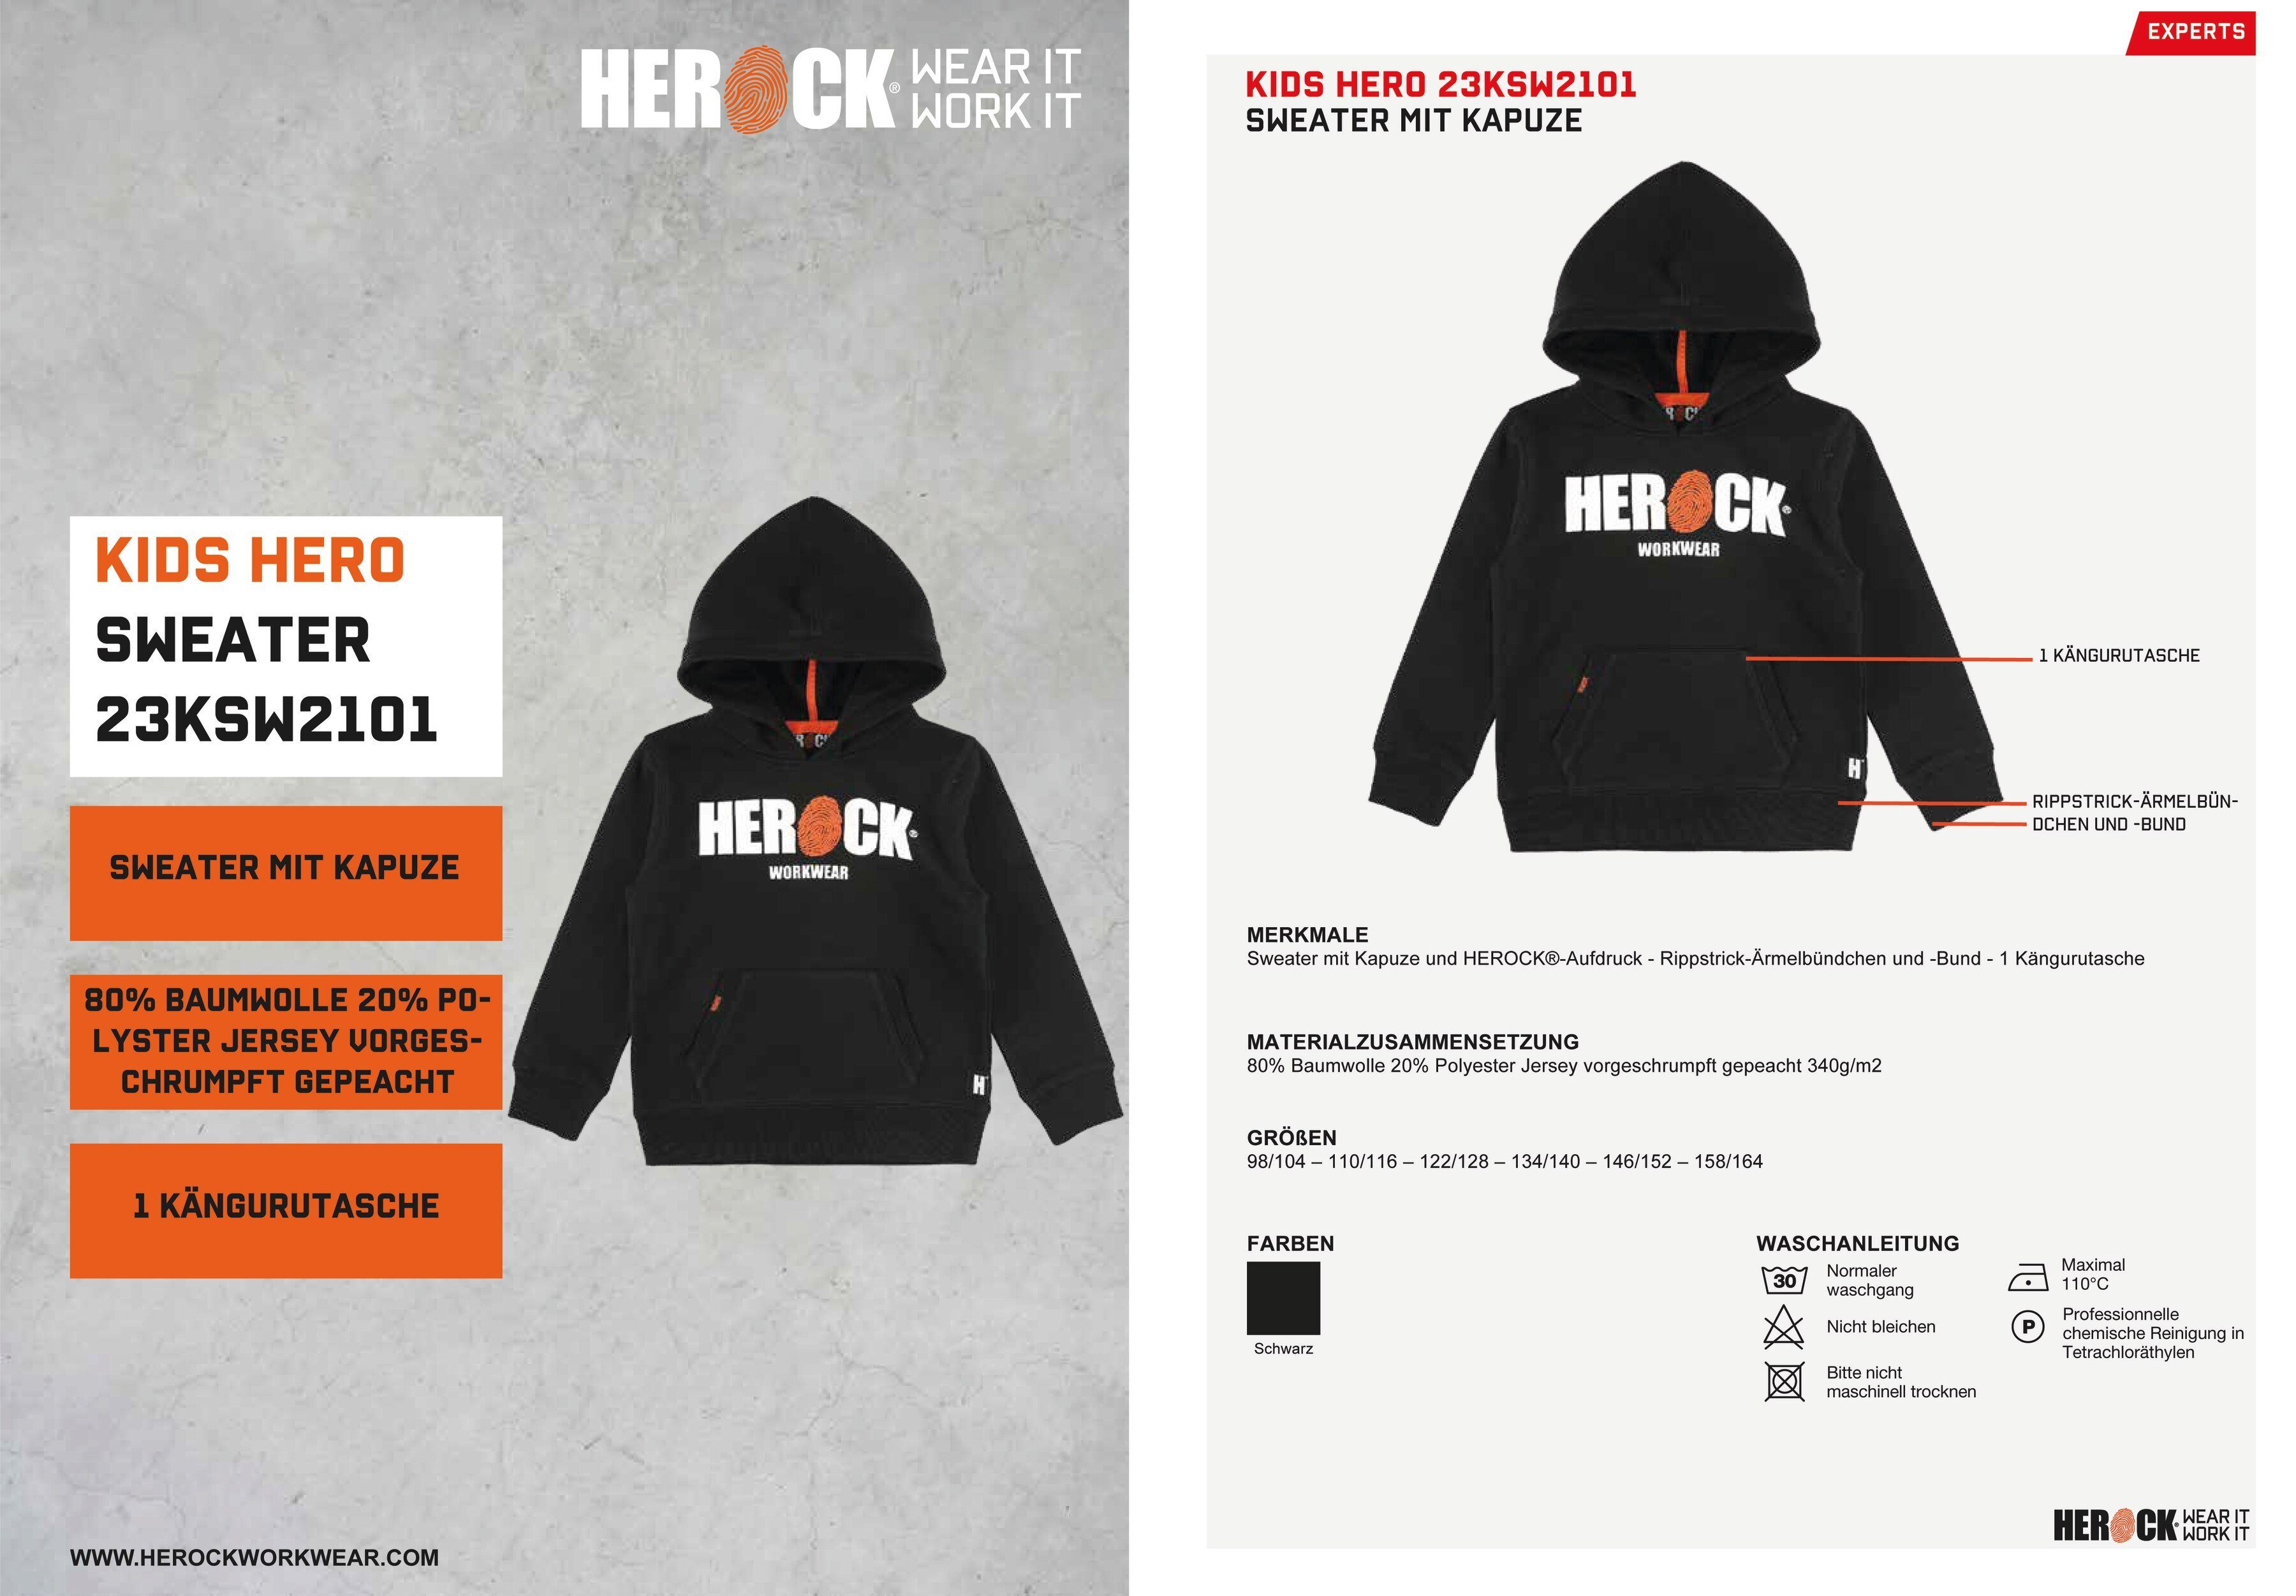 weich HERO sehr (mit KIDS Hoodie Kindersweater, Herock®-Aufdruck) Herock Kangurutasche, angenehm und